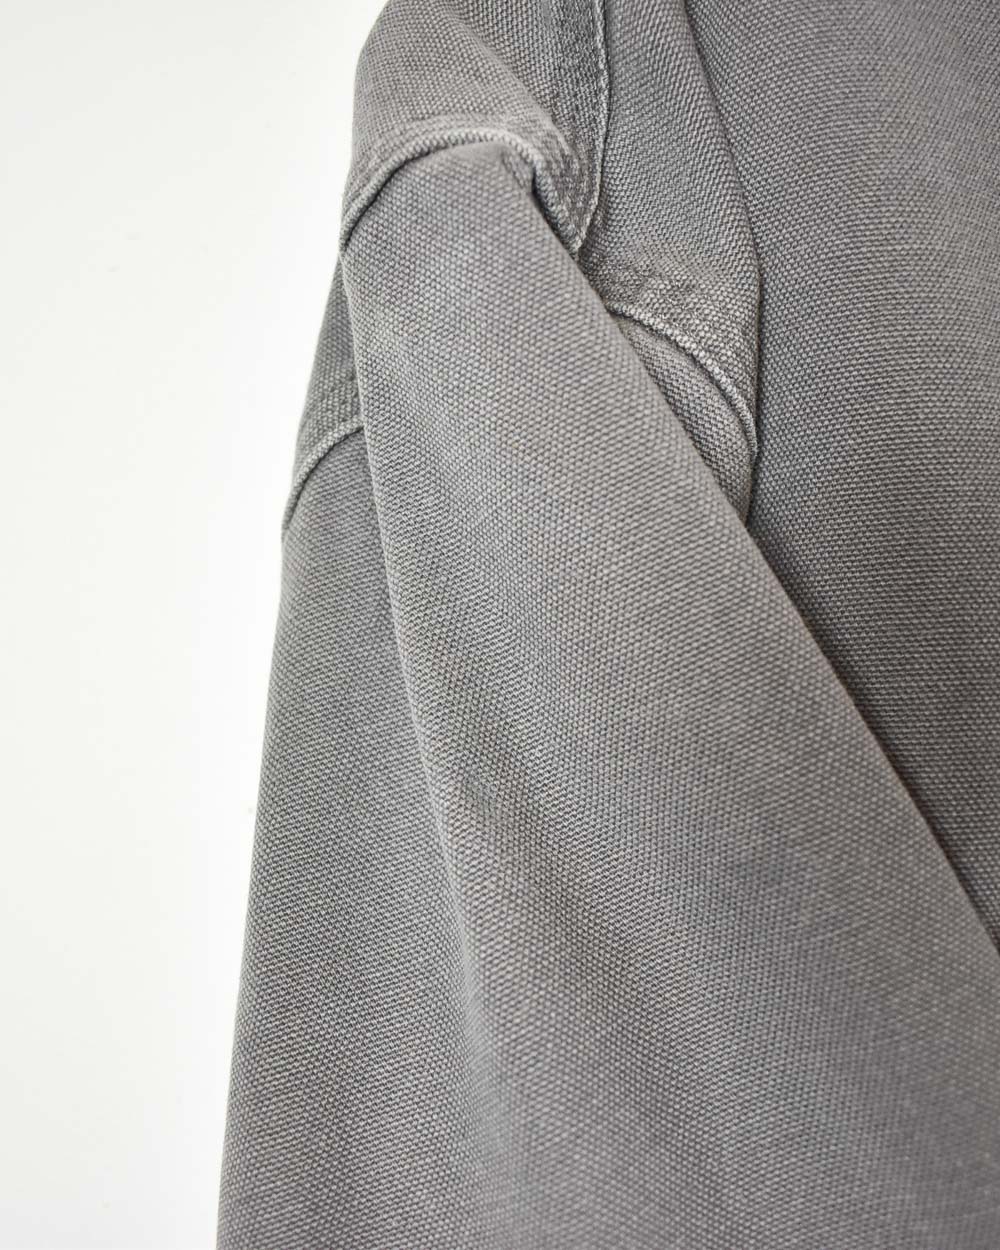 Grey Carhartt Flannel Lined Workwear Shirt - Medium